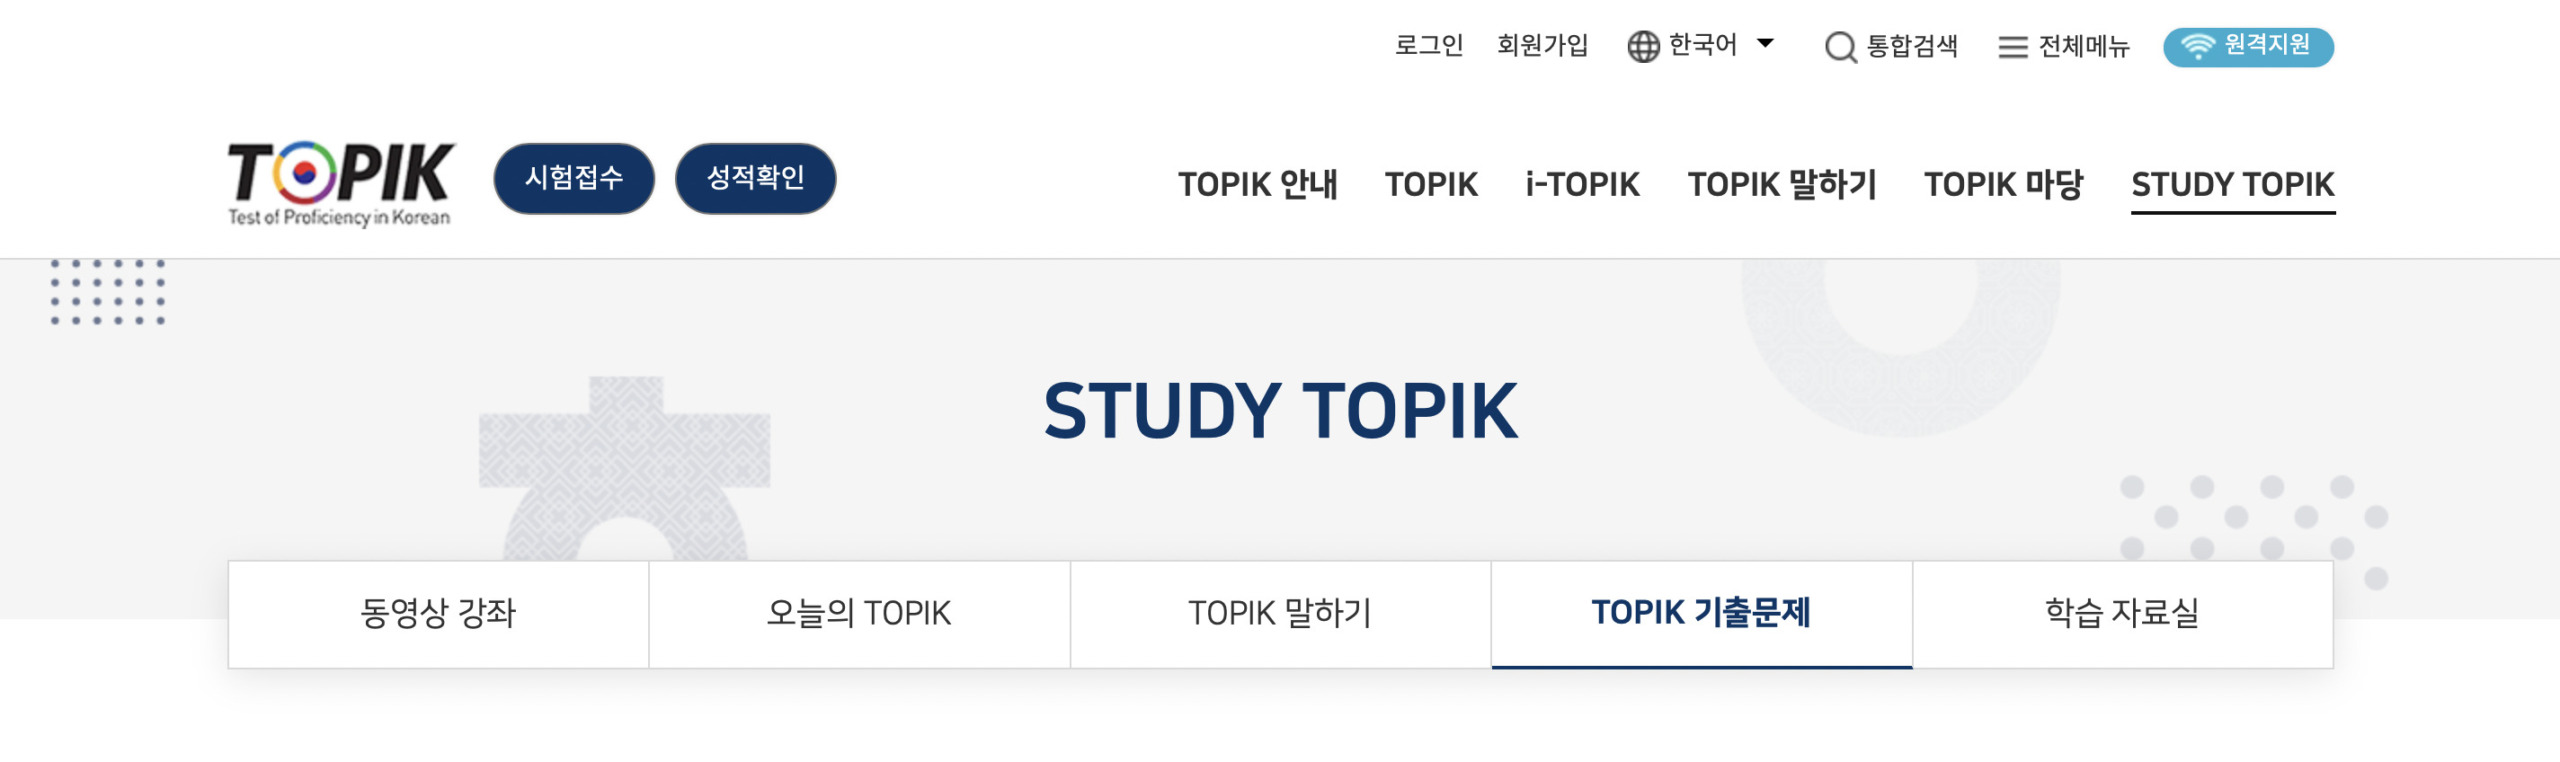 韓国語学習に役立つ無料サイト・STUDYTOPIK